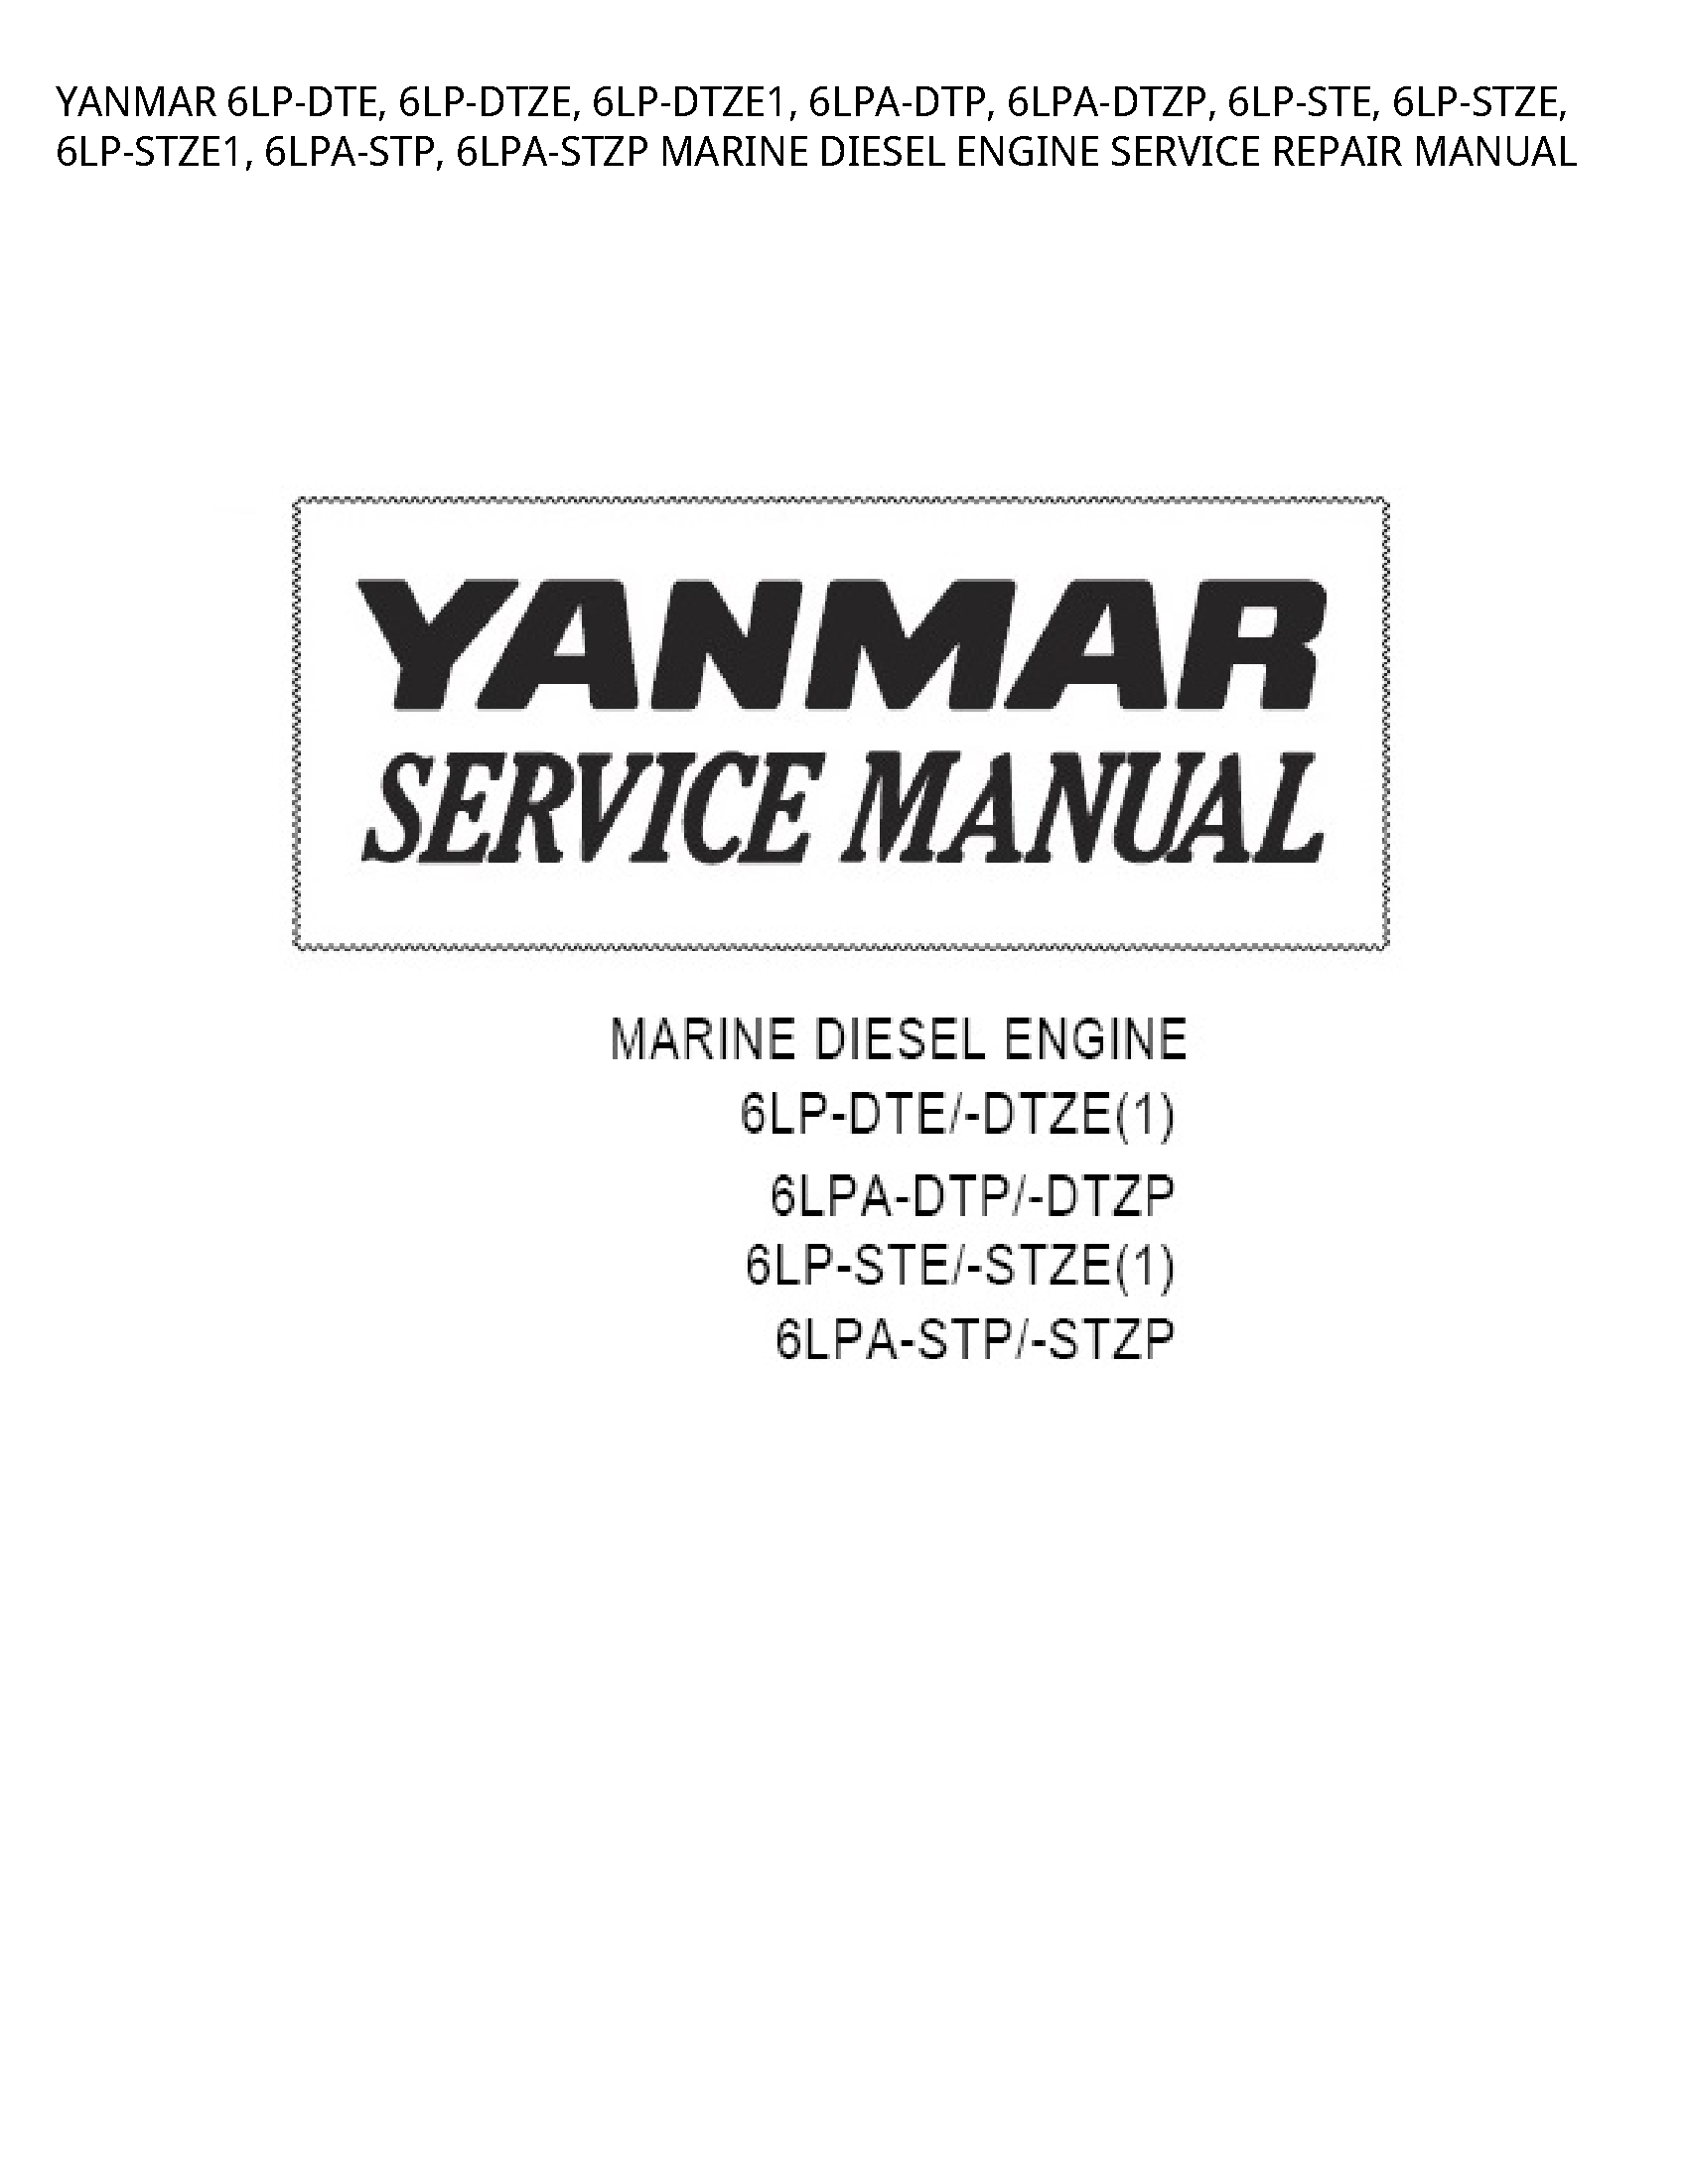 Yanmar 6LP-DTE MARINE DIESEL ENGINE SERVICE REPAIR manual